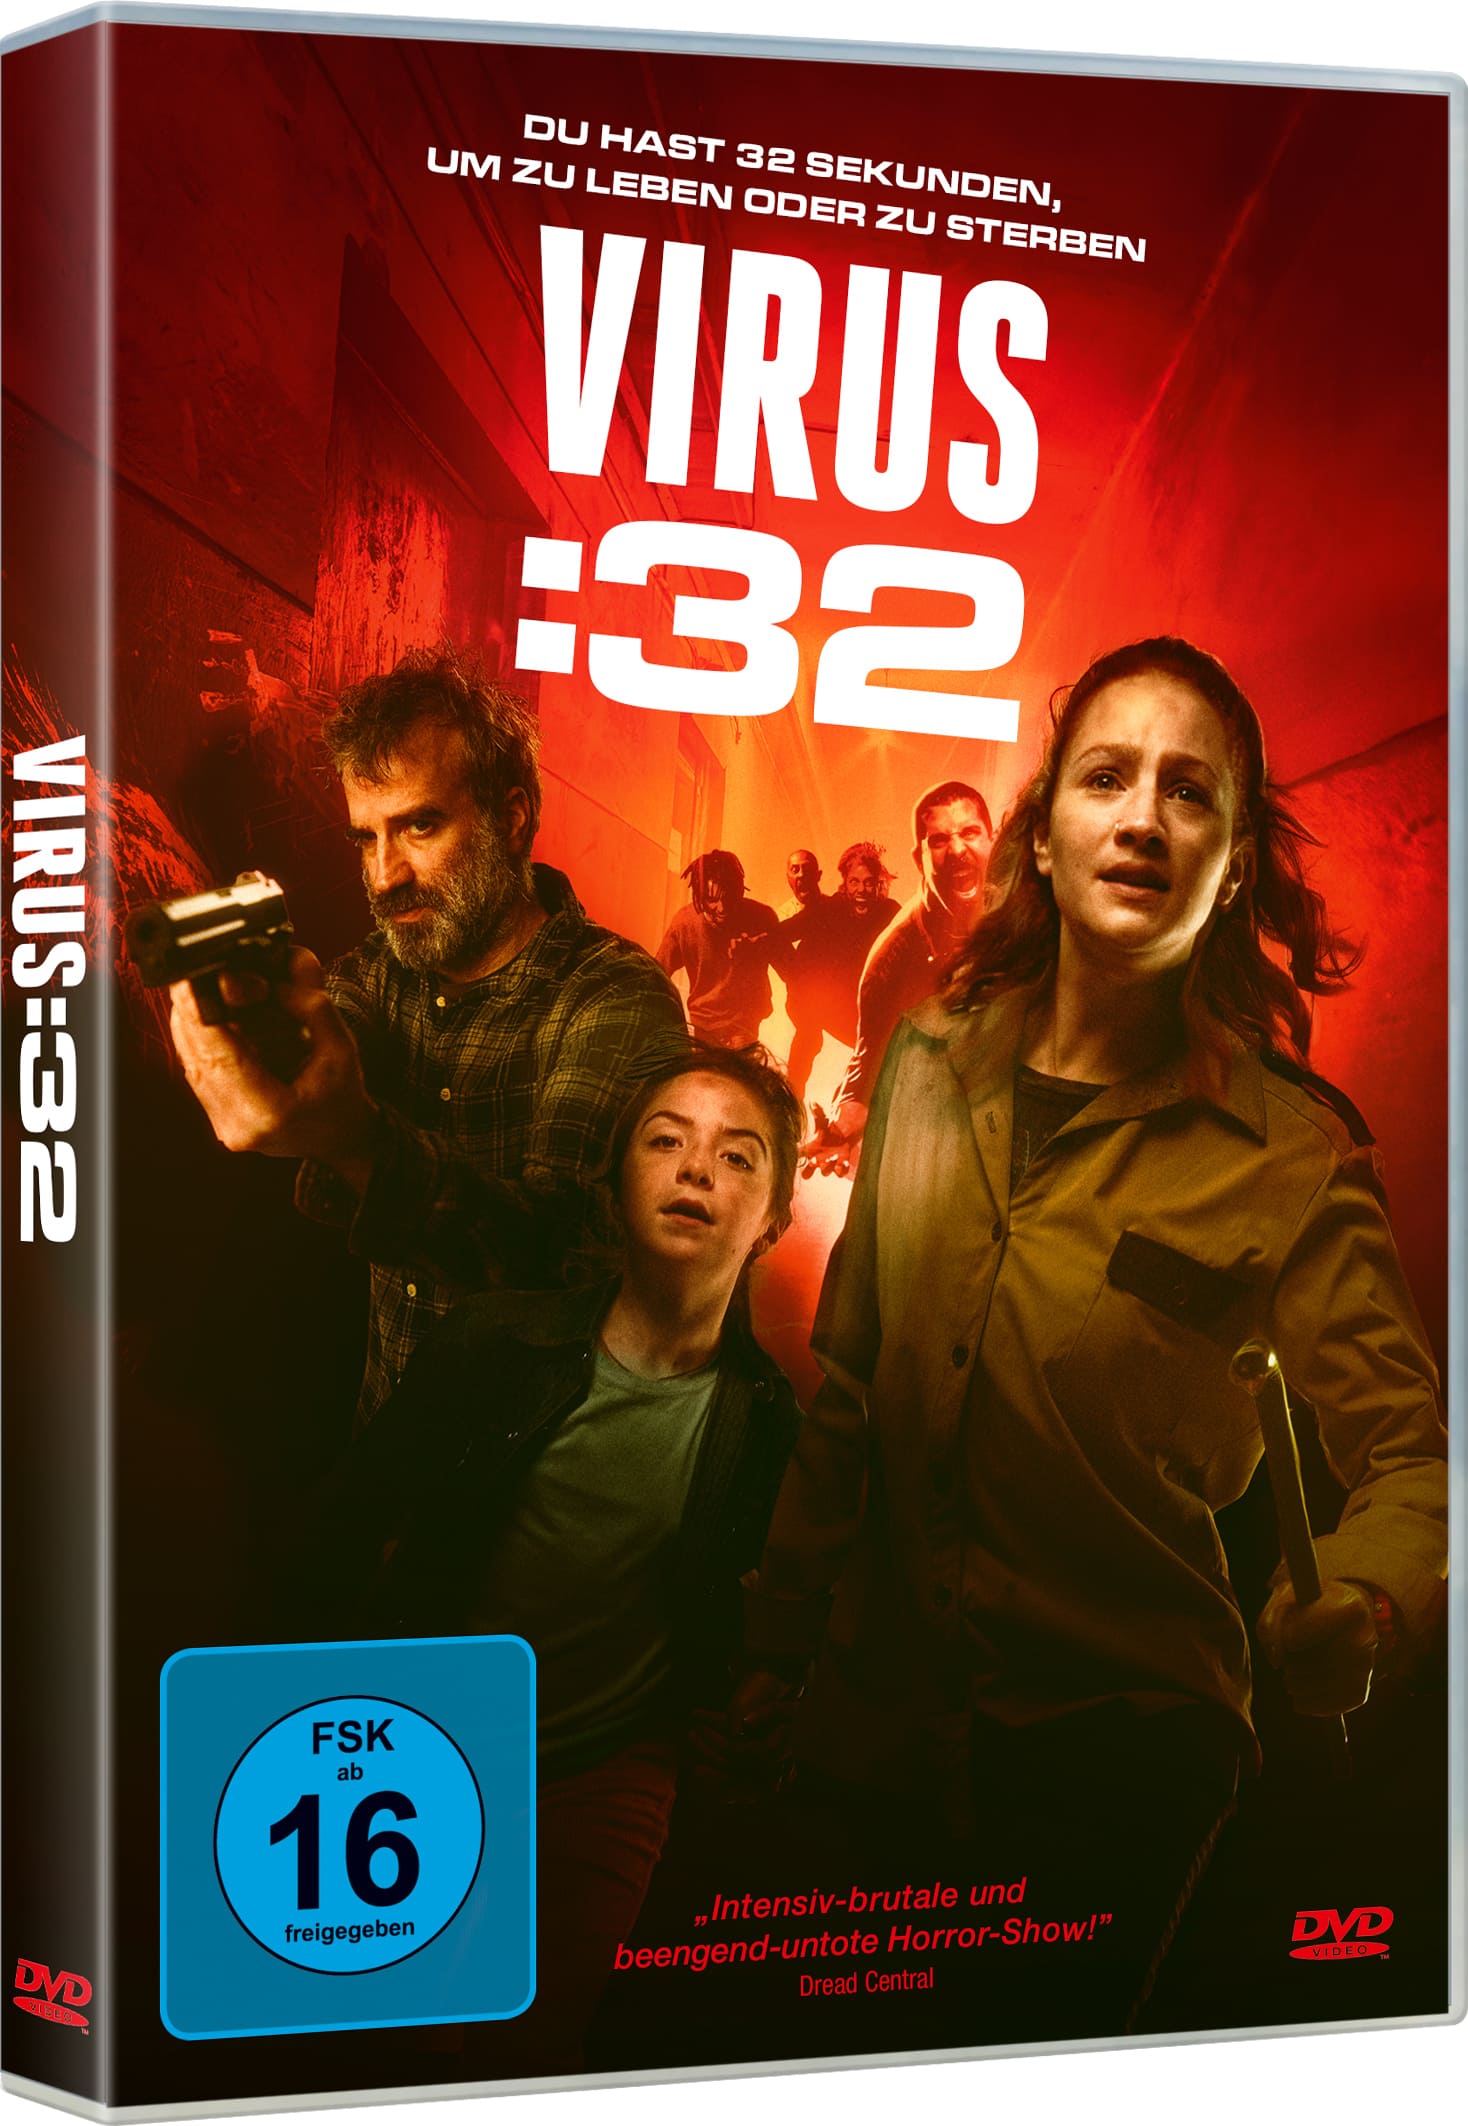 Virus:32 (DVD) Image 2